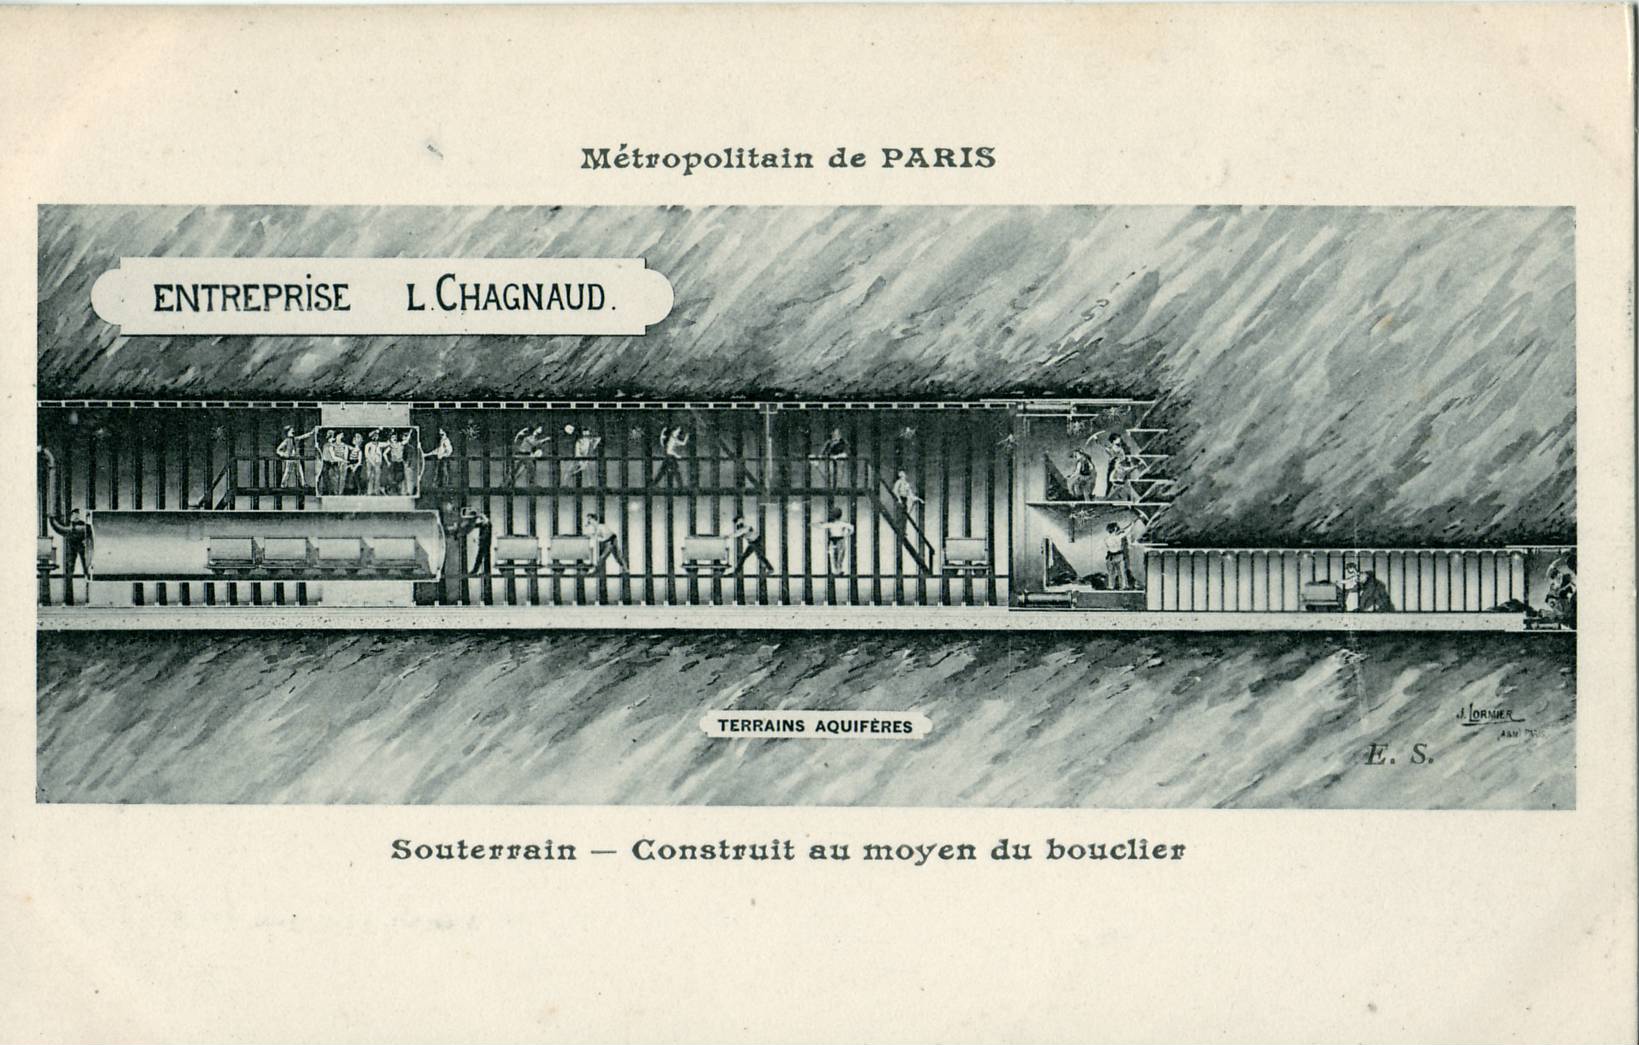 construction du métro parisien